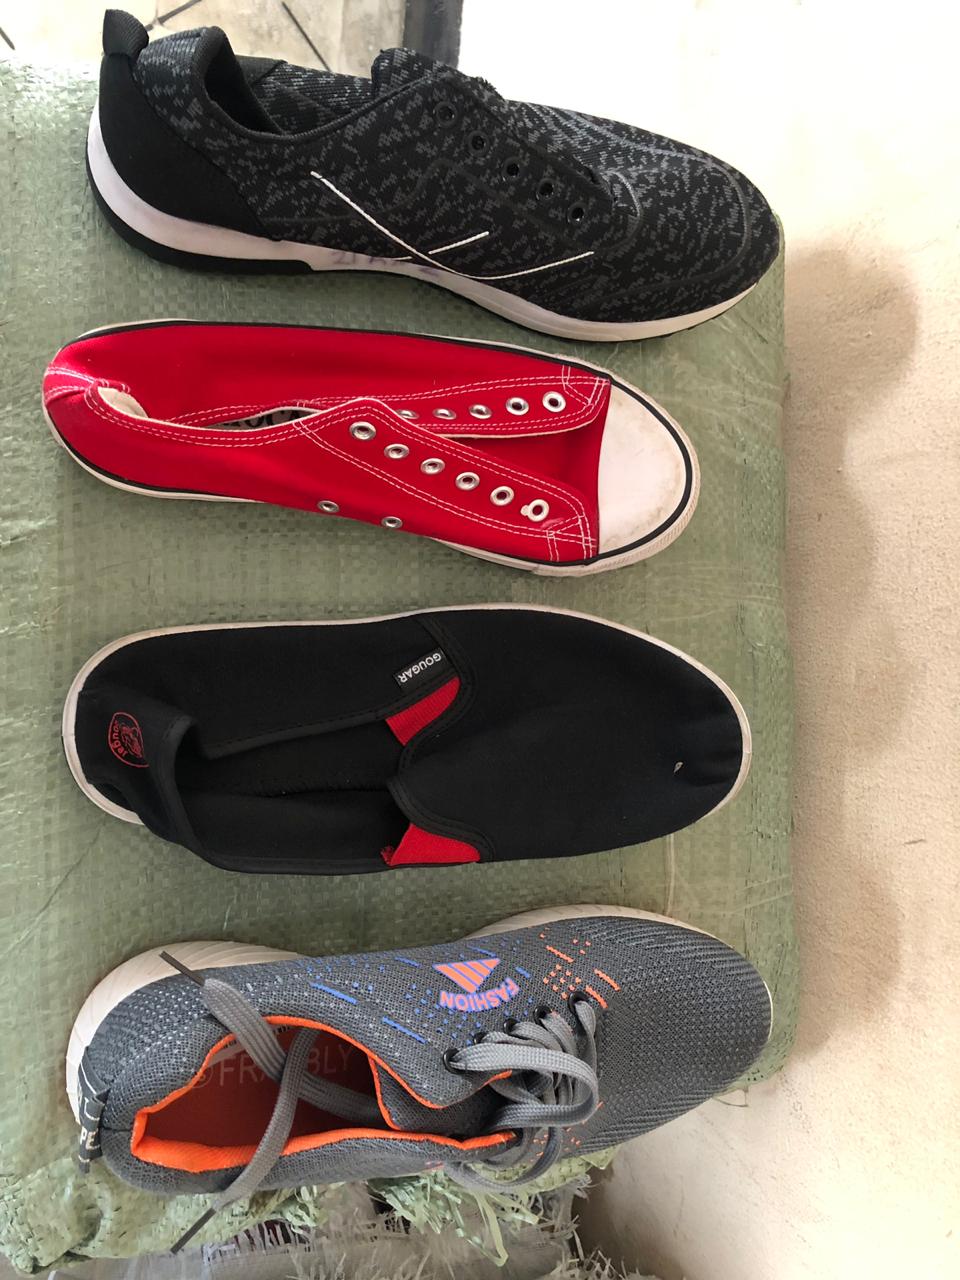 Algunos de los modelos encontrados de zapatos de contrabando.